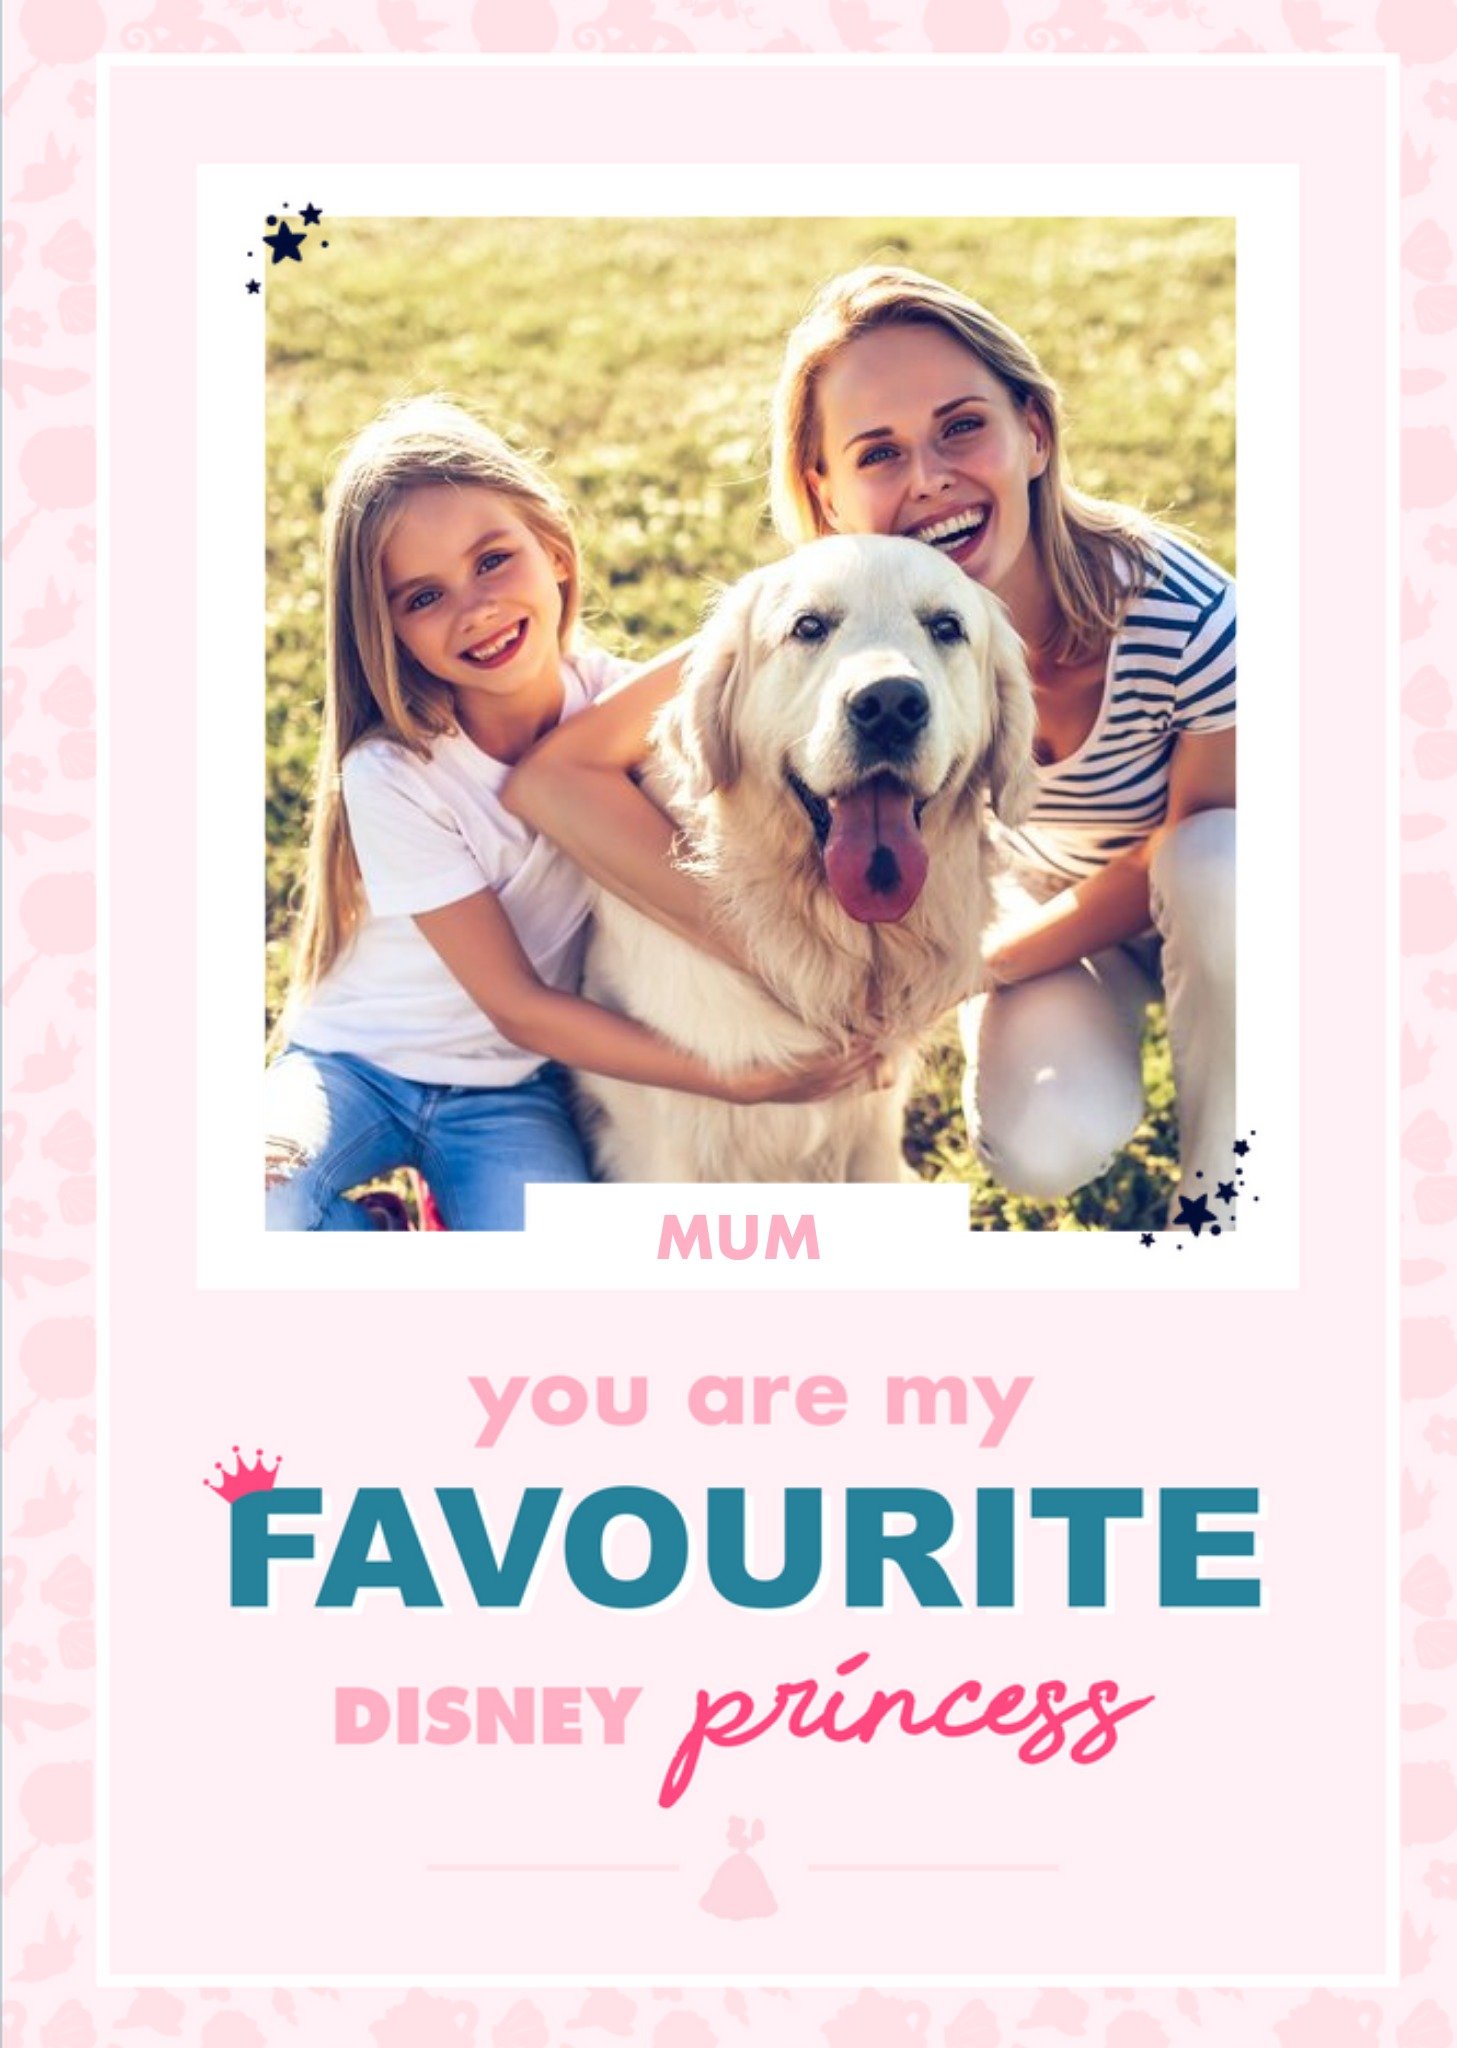 Disney Princesses Mum You Are My Favourite Disney Princess Photo Birthday Card, Large